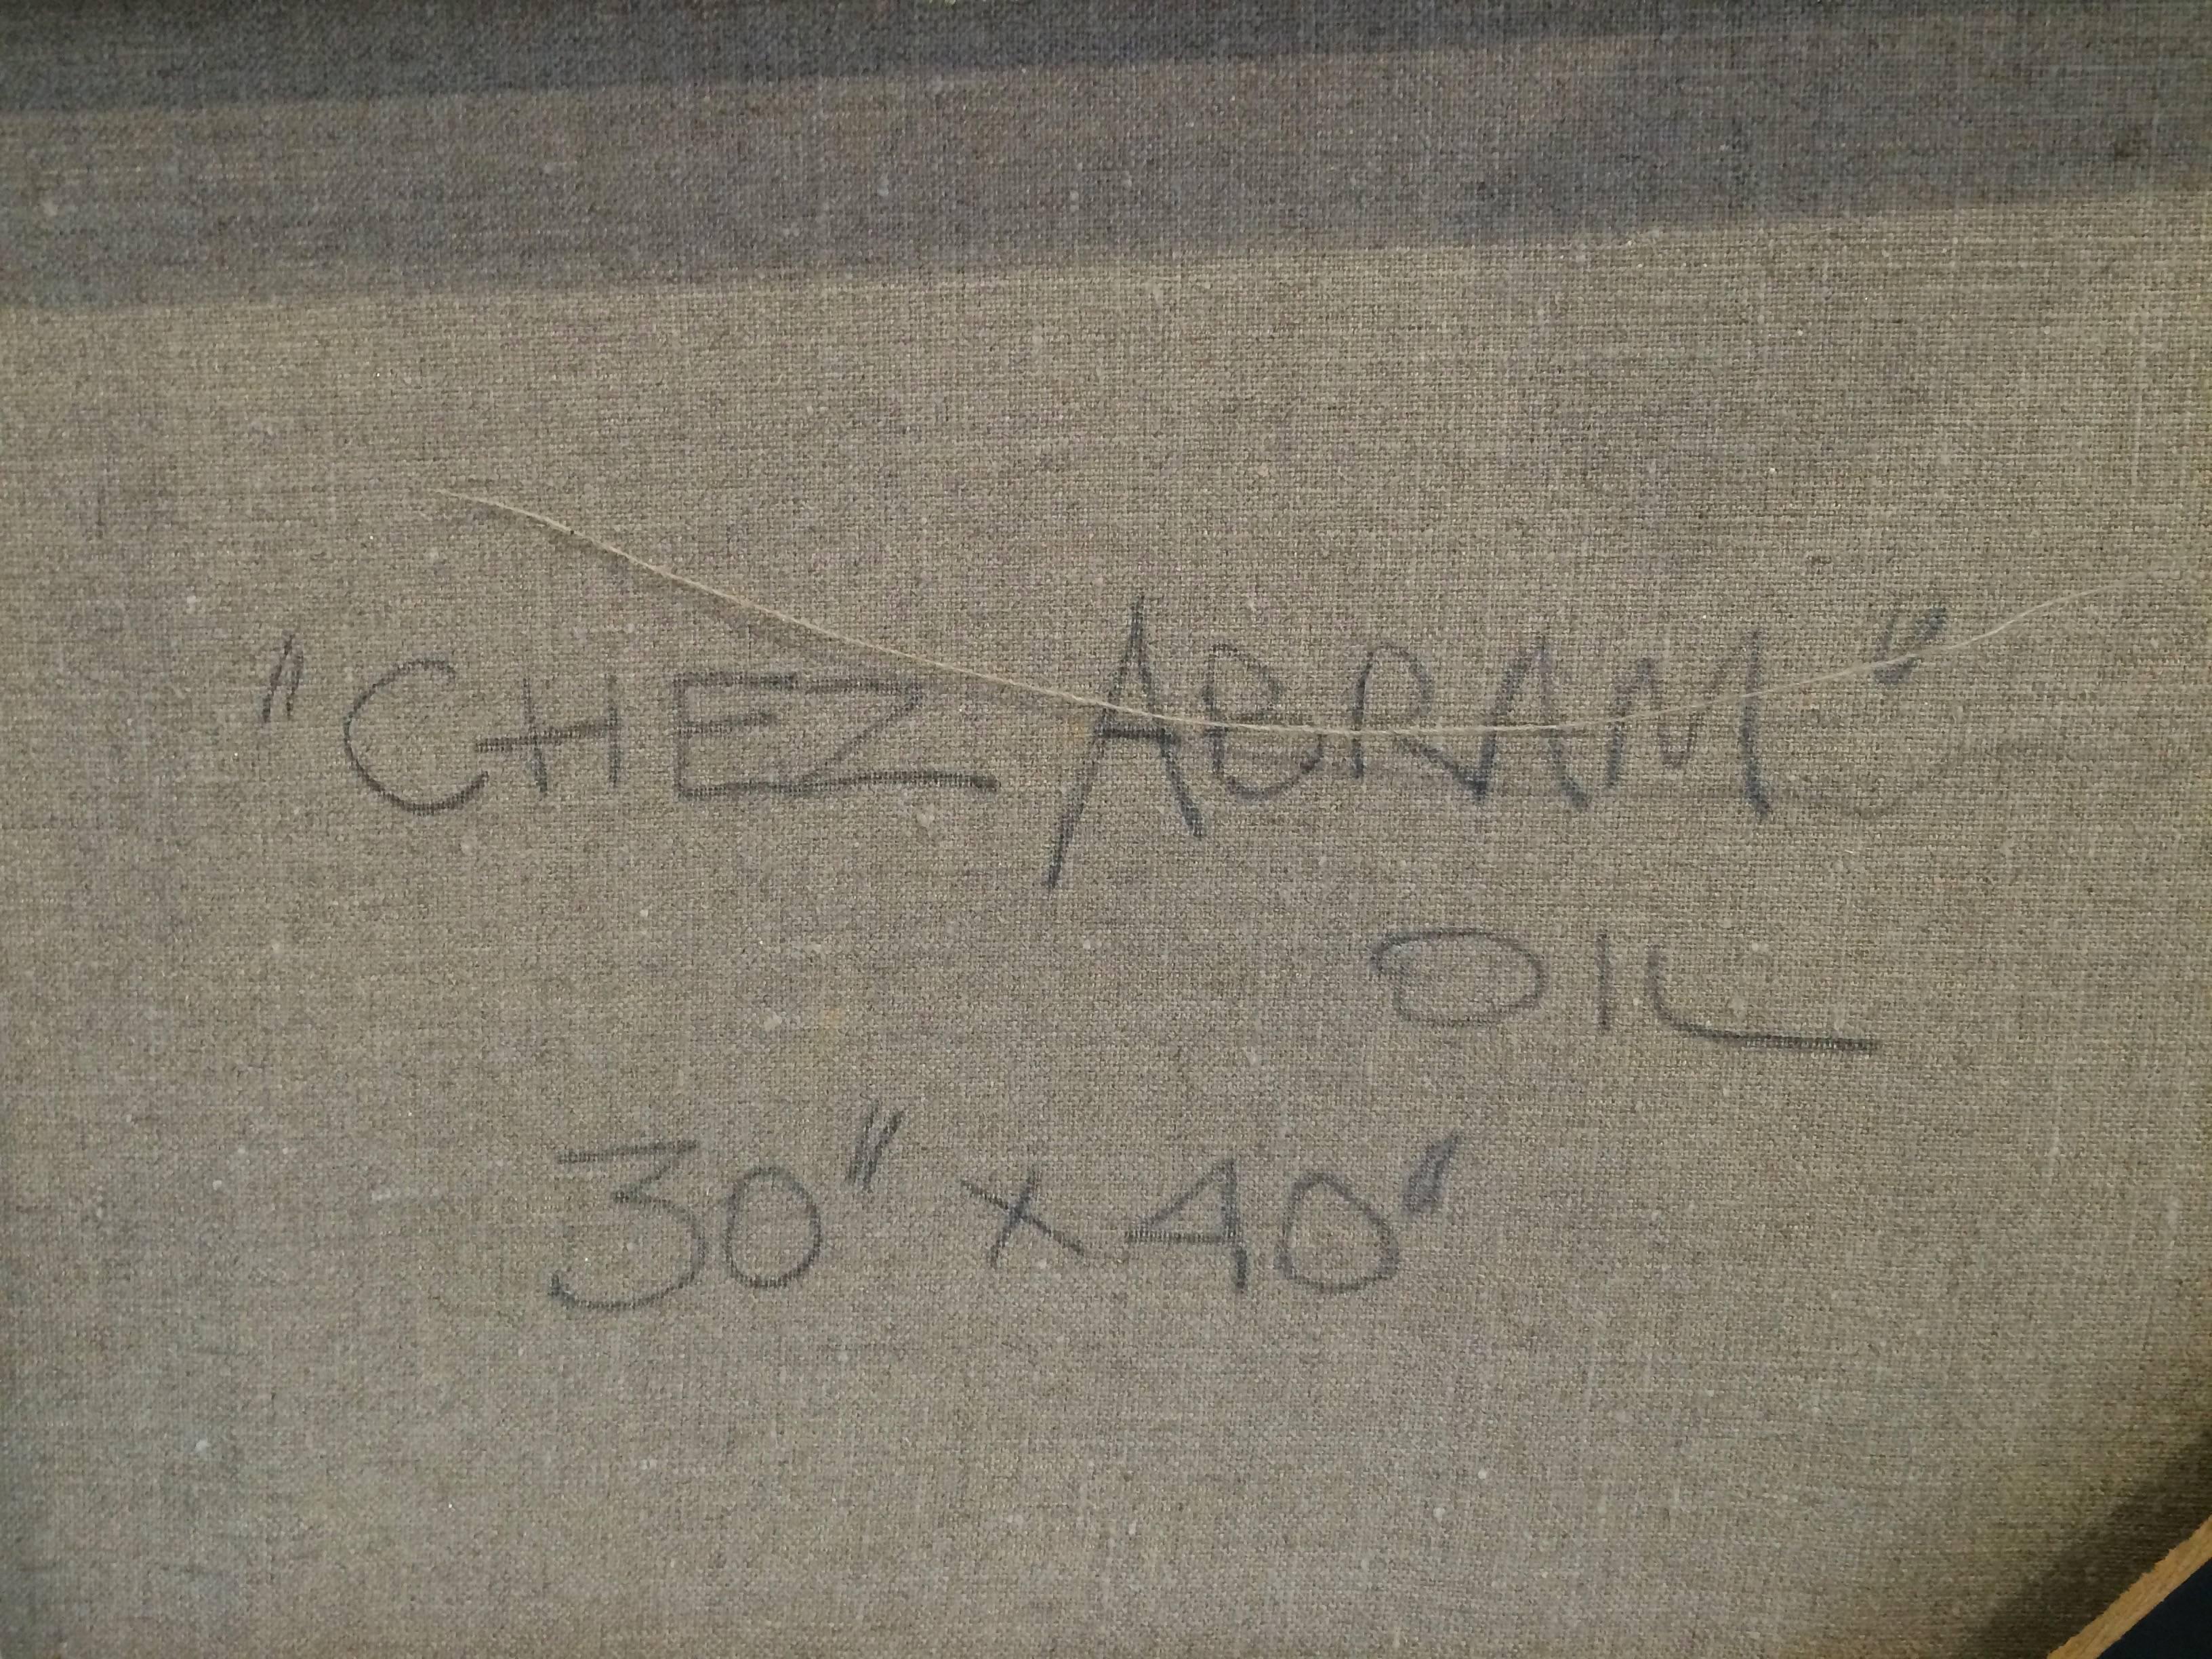 Chez Abram 
Künstler signiert mit Initialen, datiert 94,  Titel, ungerahmt. 
Gregor Zamierowski, polnisch-kanadischer Künstler. Lebendiges Öl auf Leinwand mit Figuren in geometrischer Abstraktion, beeinflusst von Marc Chagall.